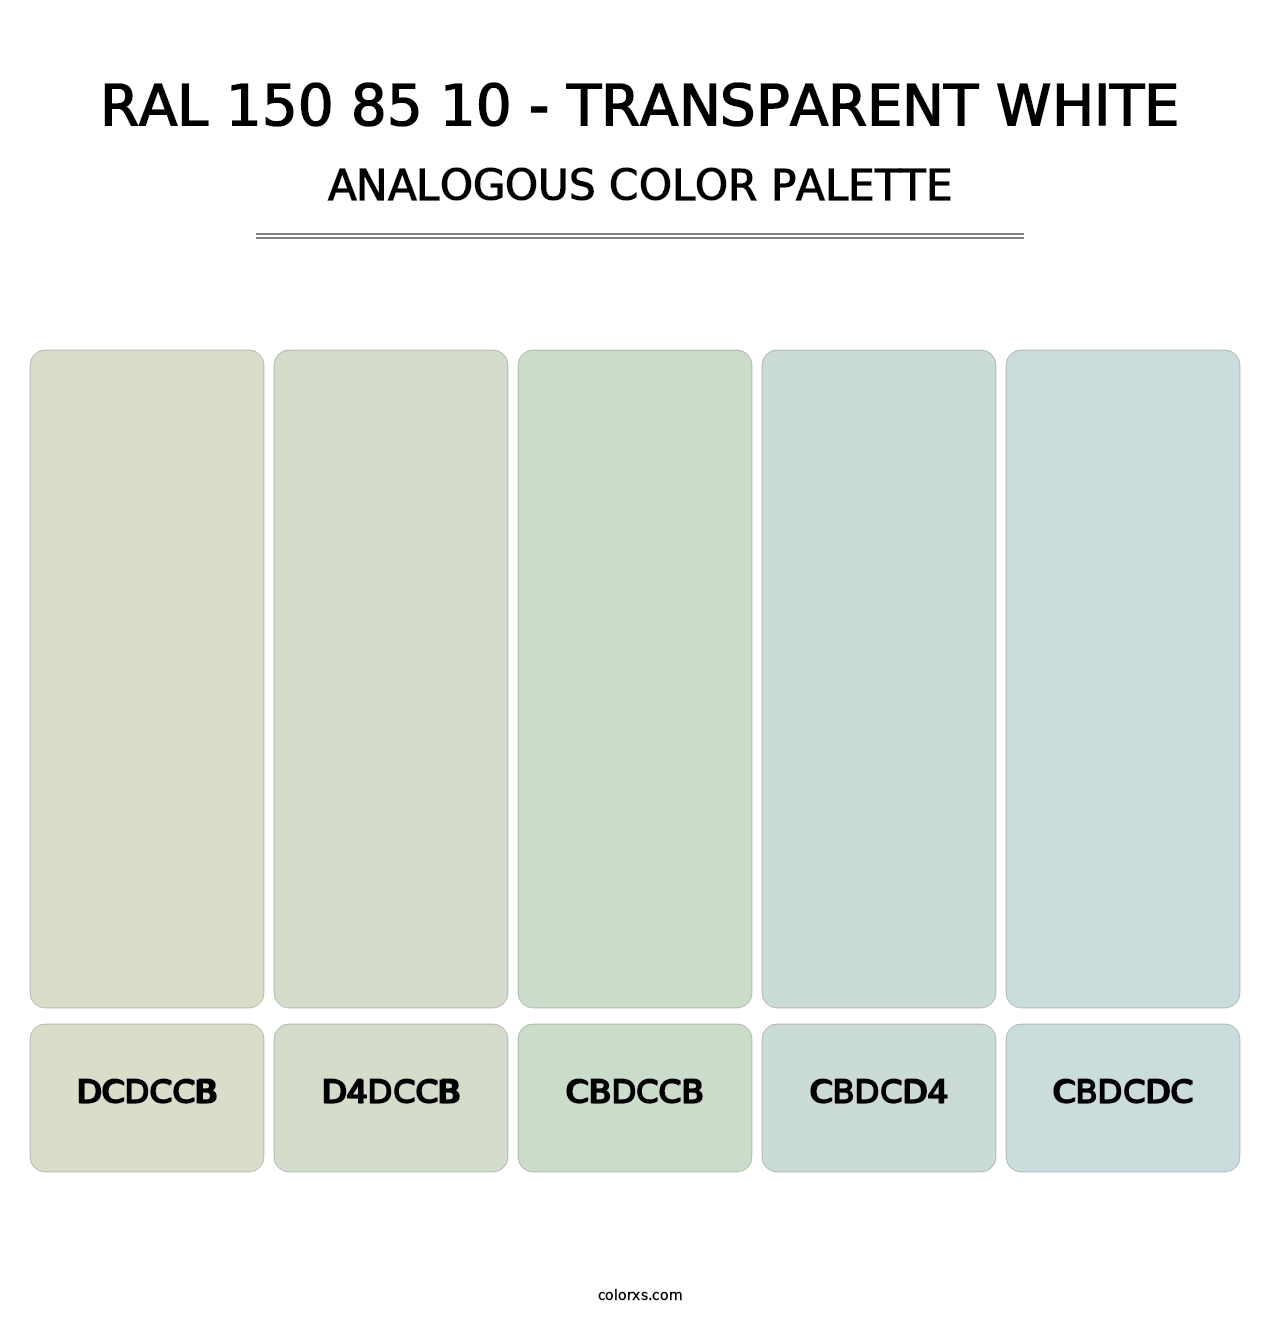 RAL 150 85 10 - Transparent White - Analogous Color Palette